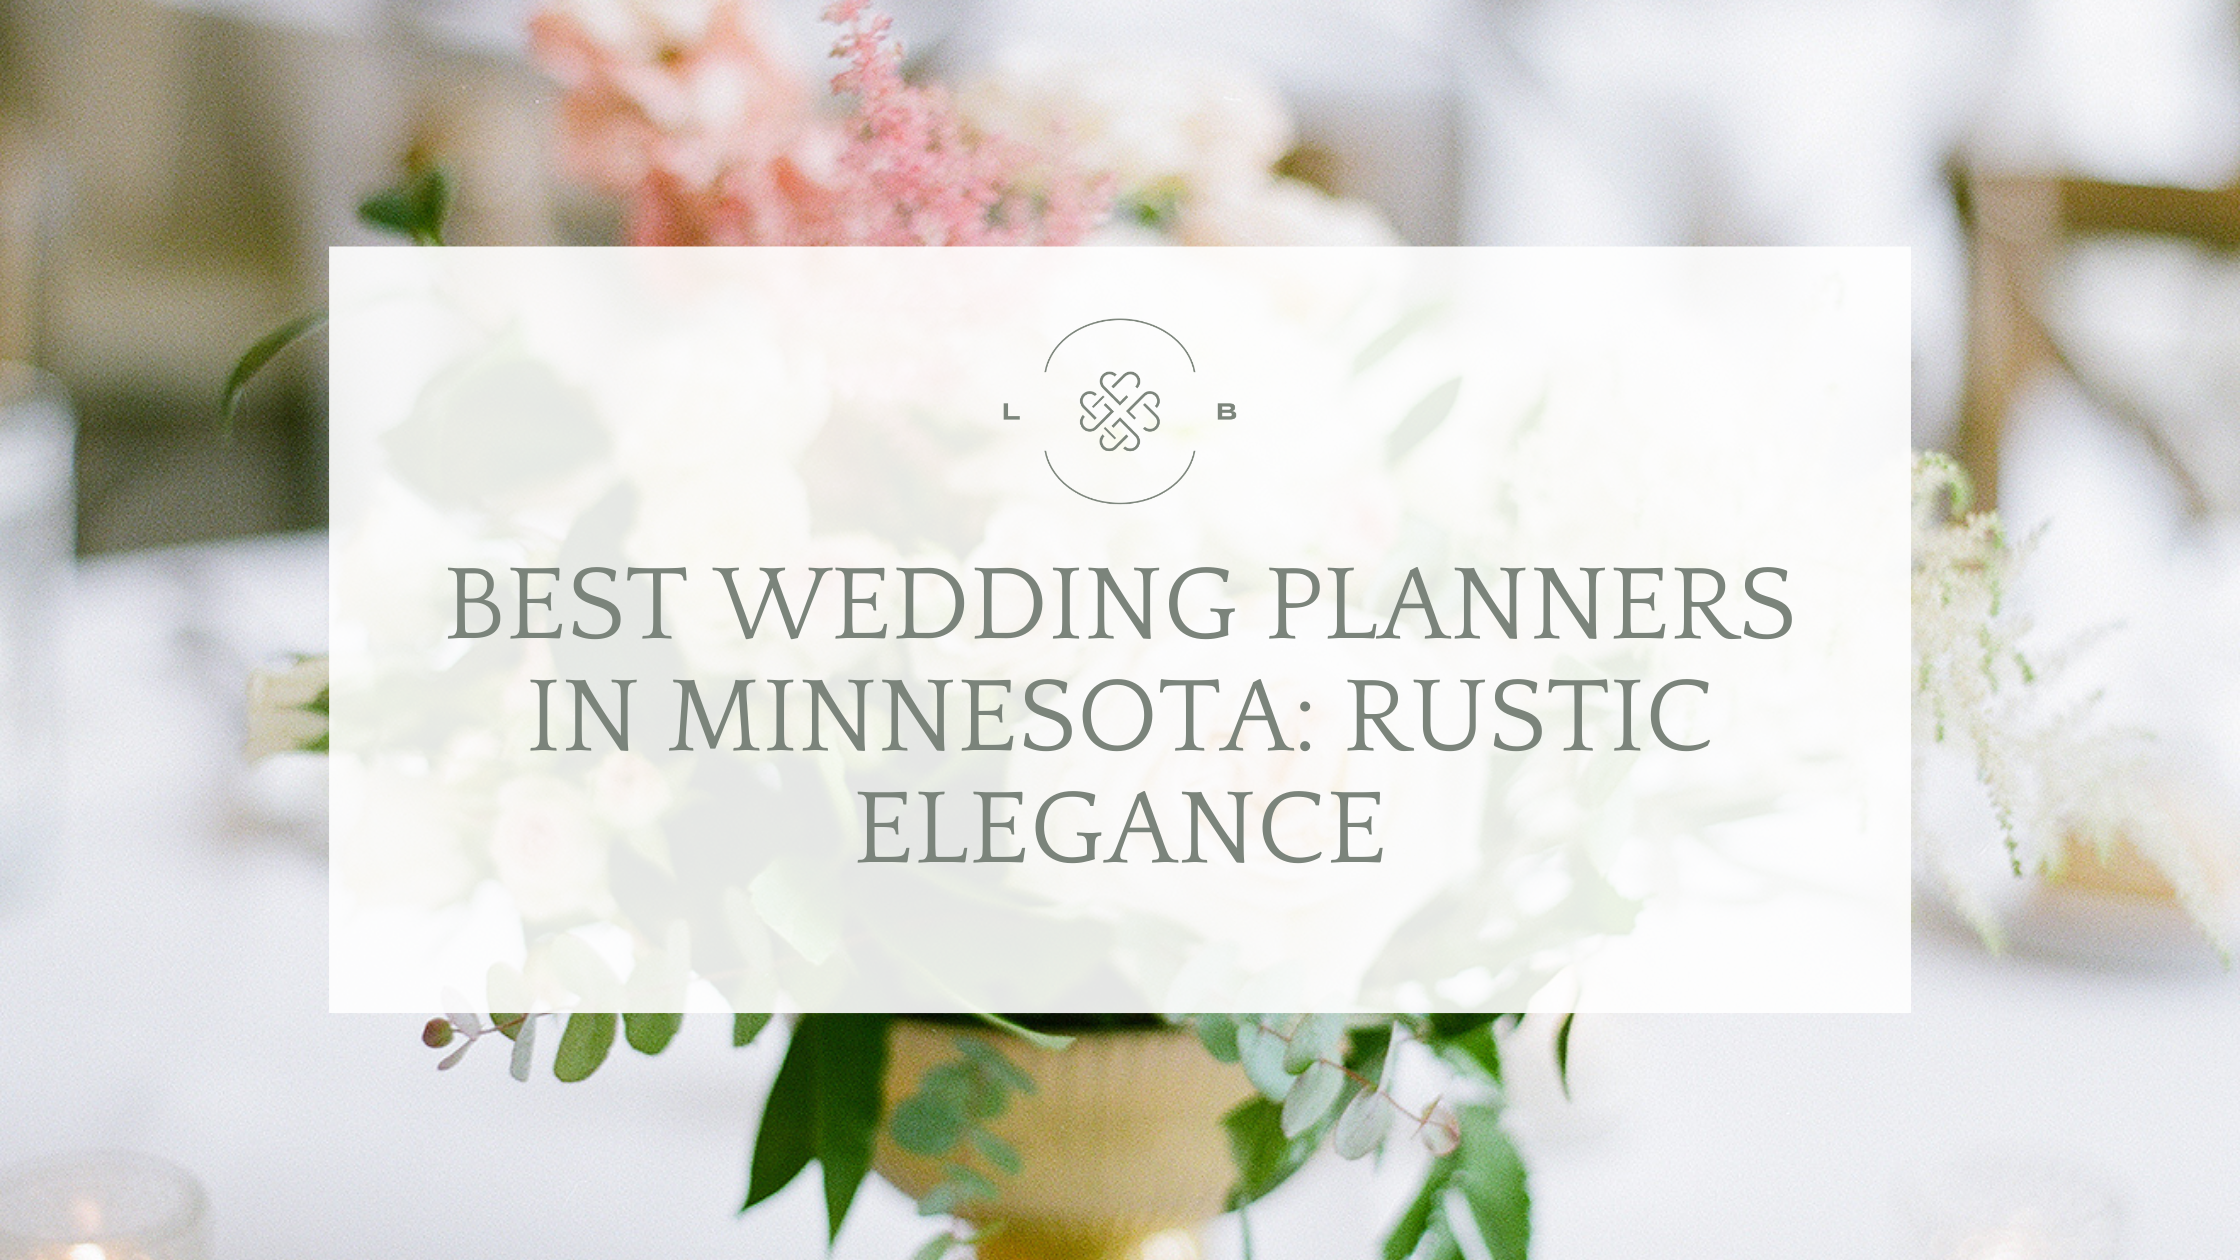 Wedding planner in Minnesota Rustic Elegance